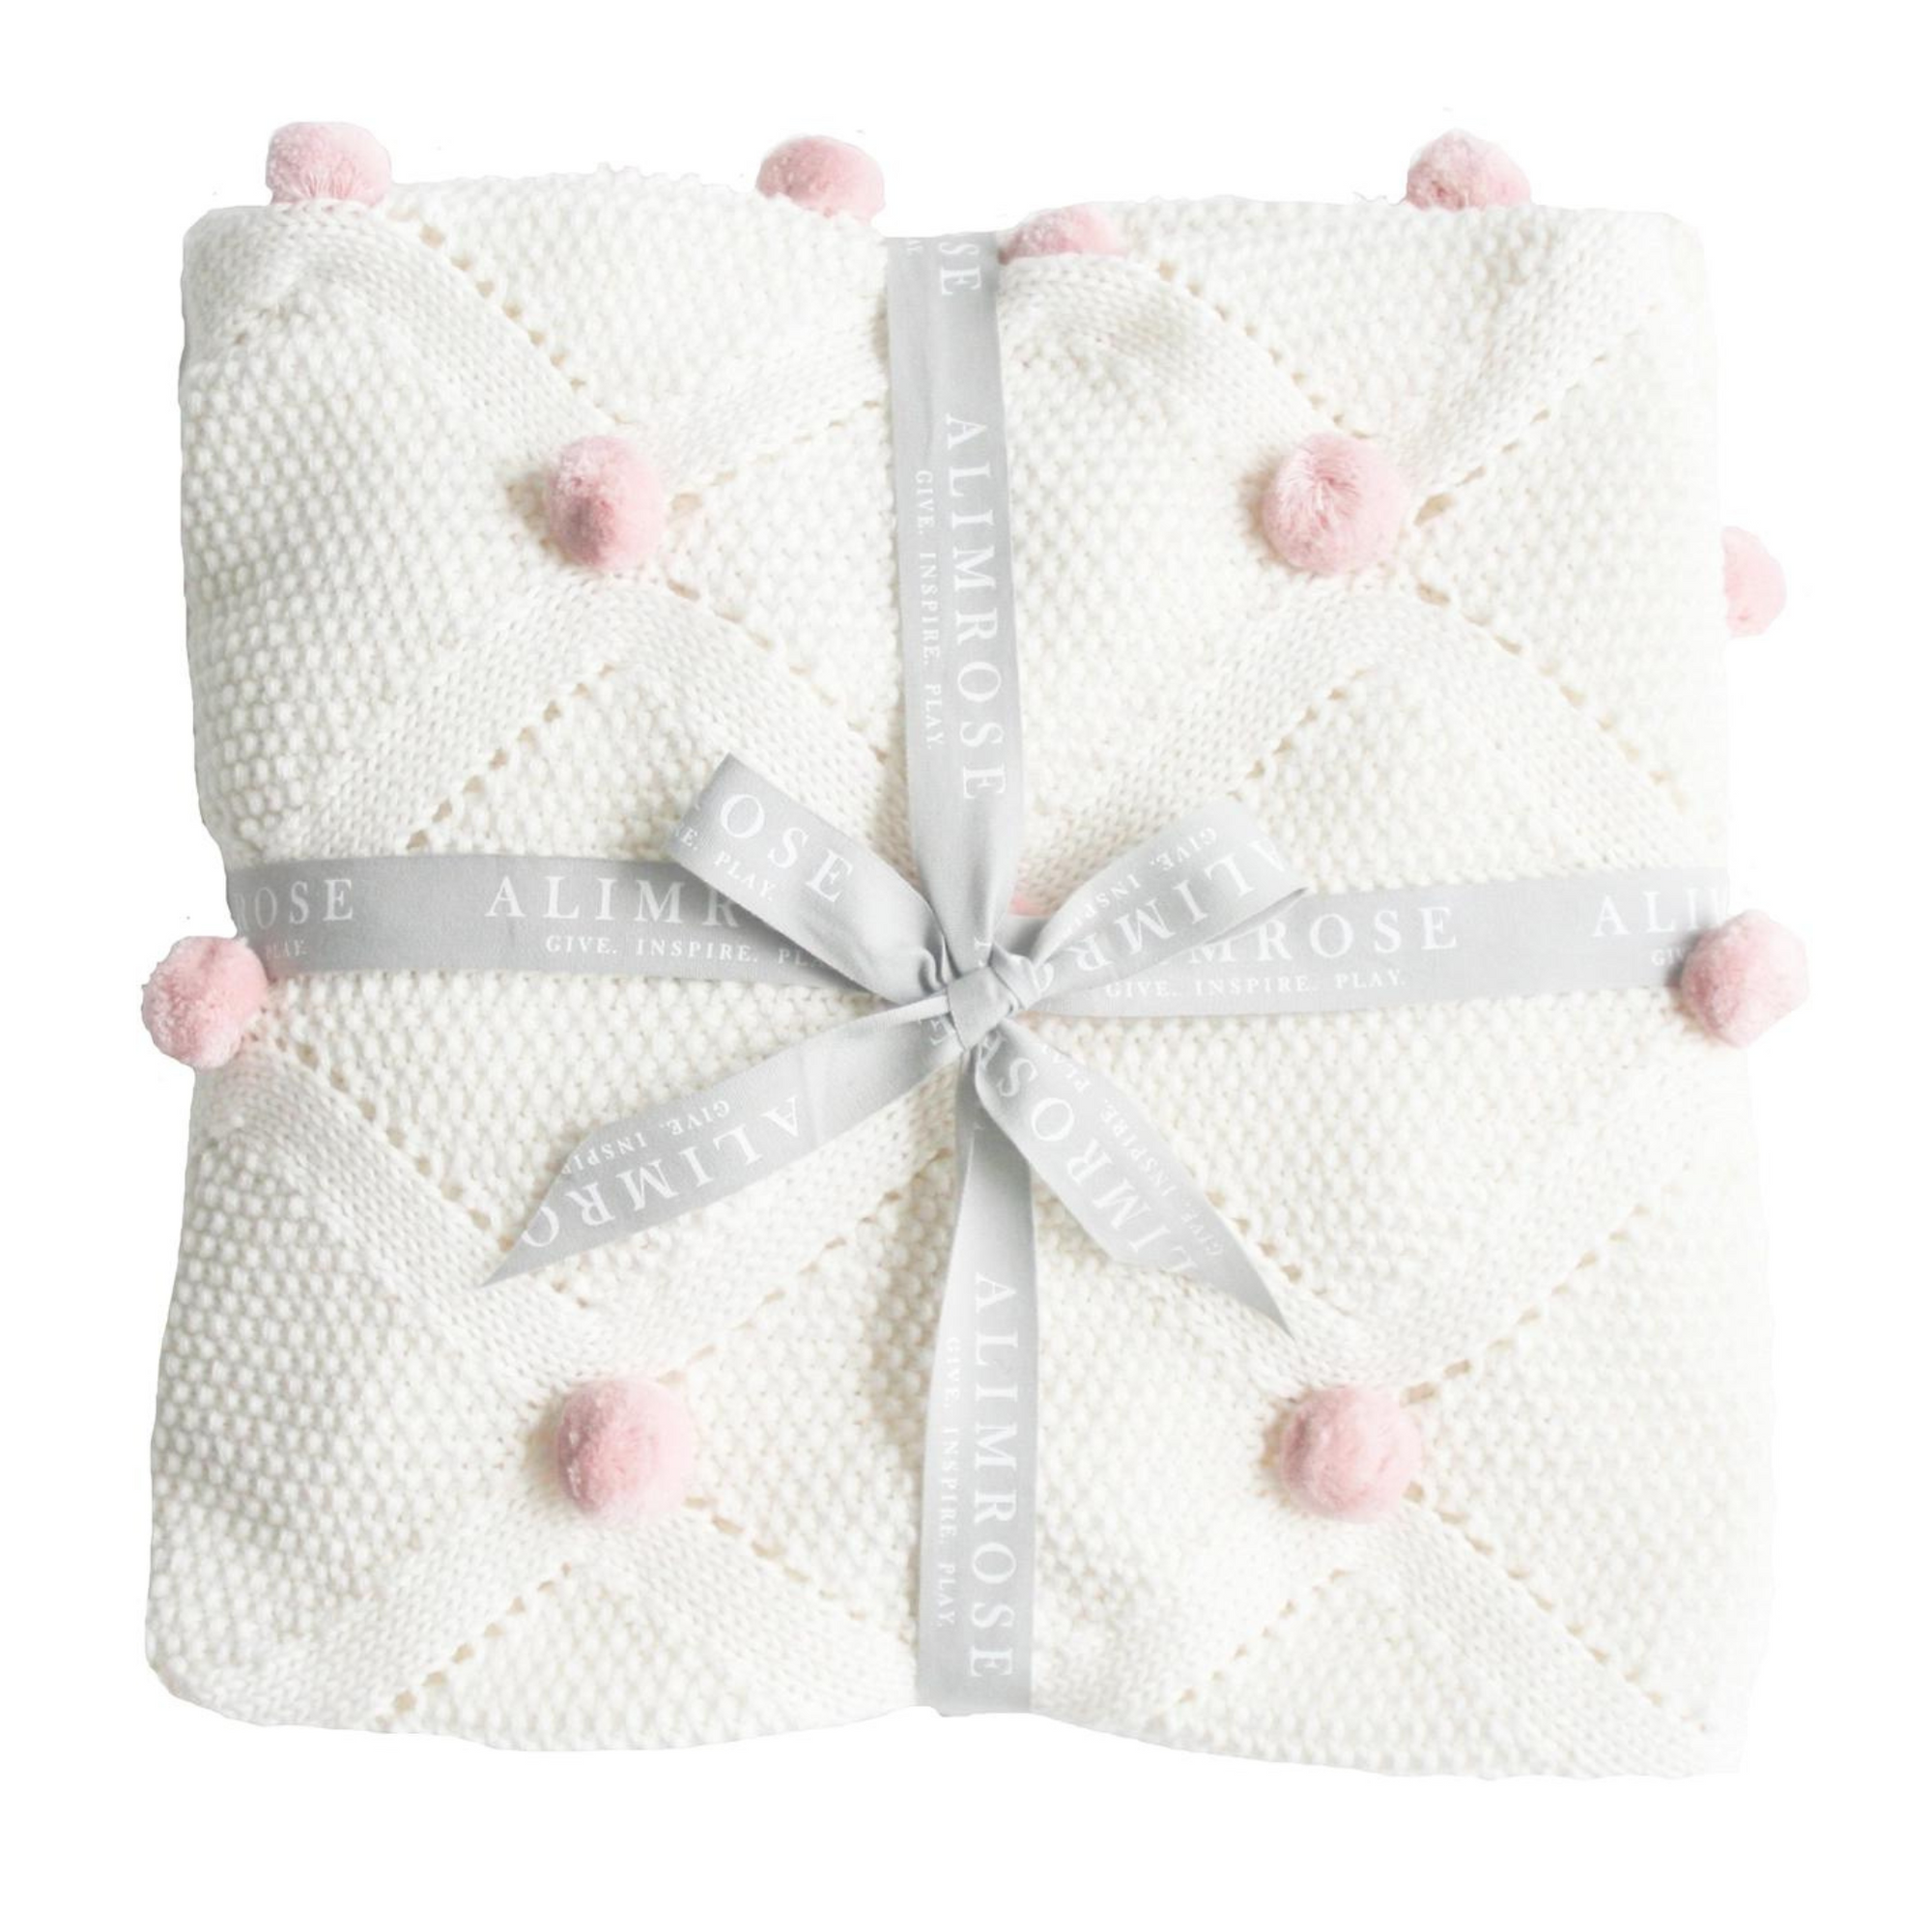 Alimrose Pom Pom Baby Blanket - Ivory & Pink